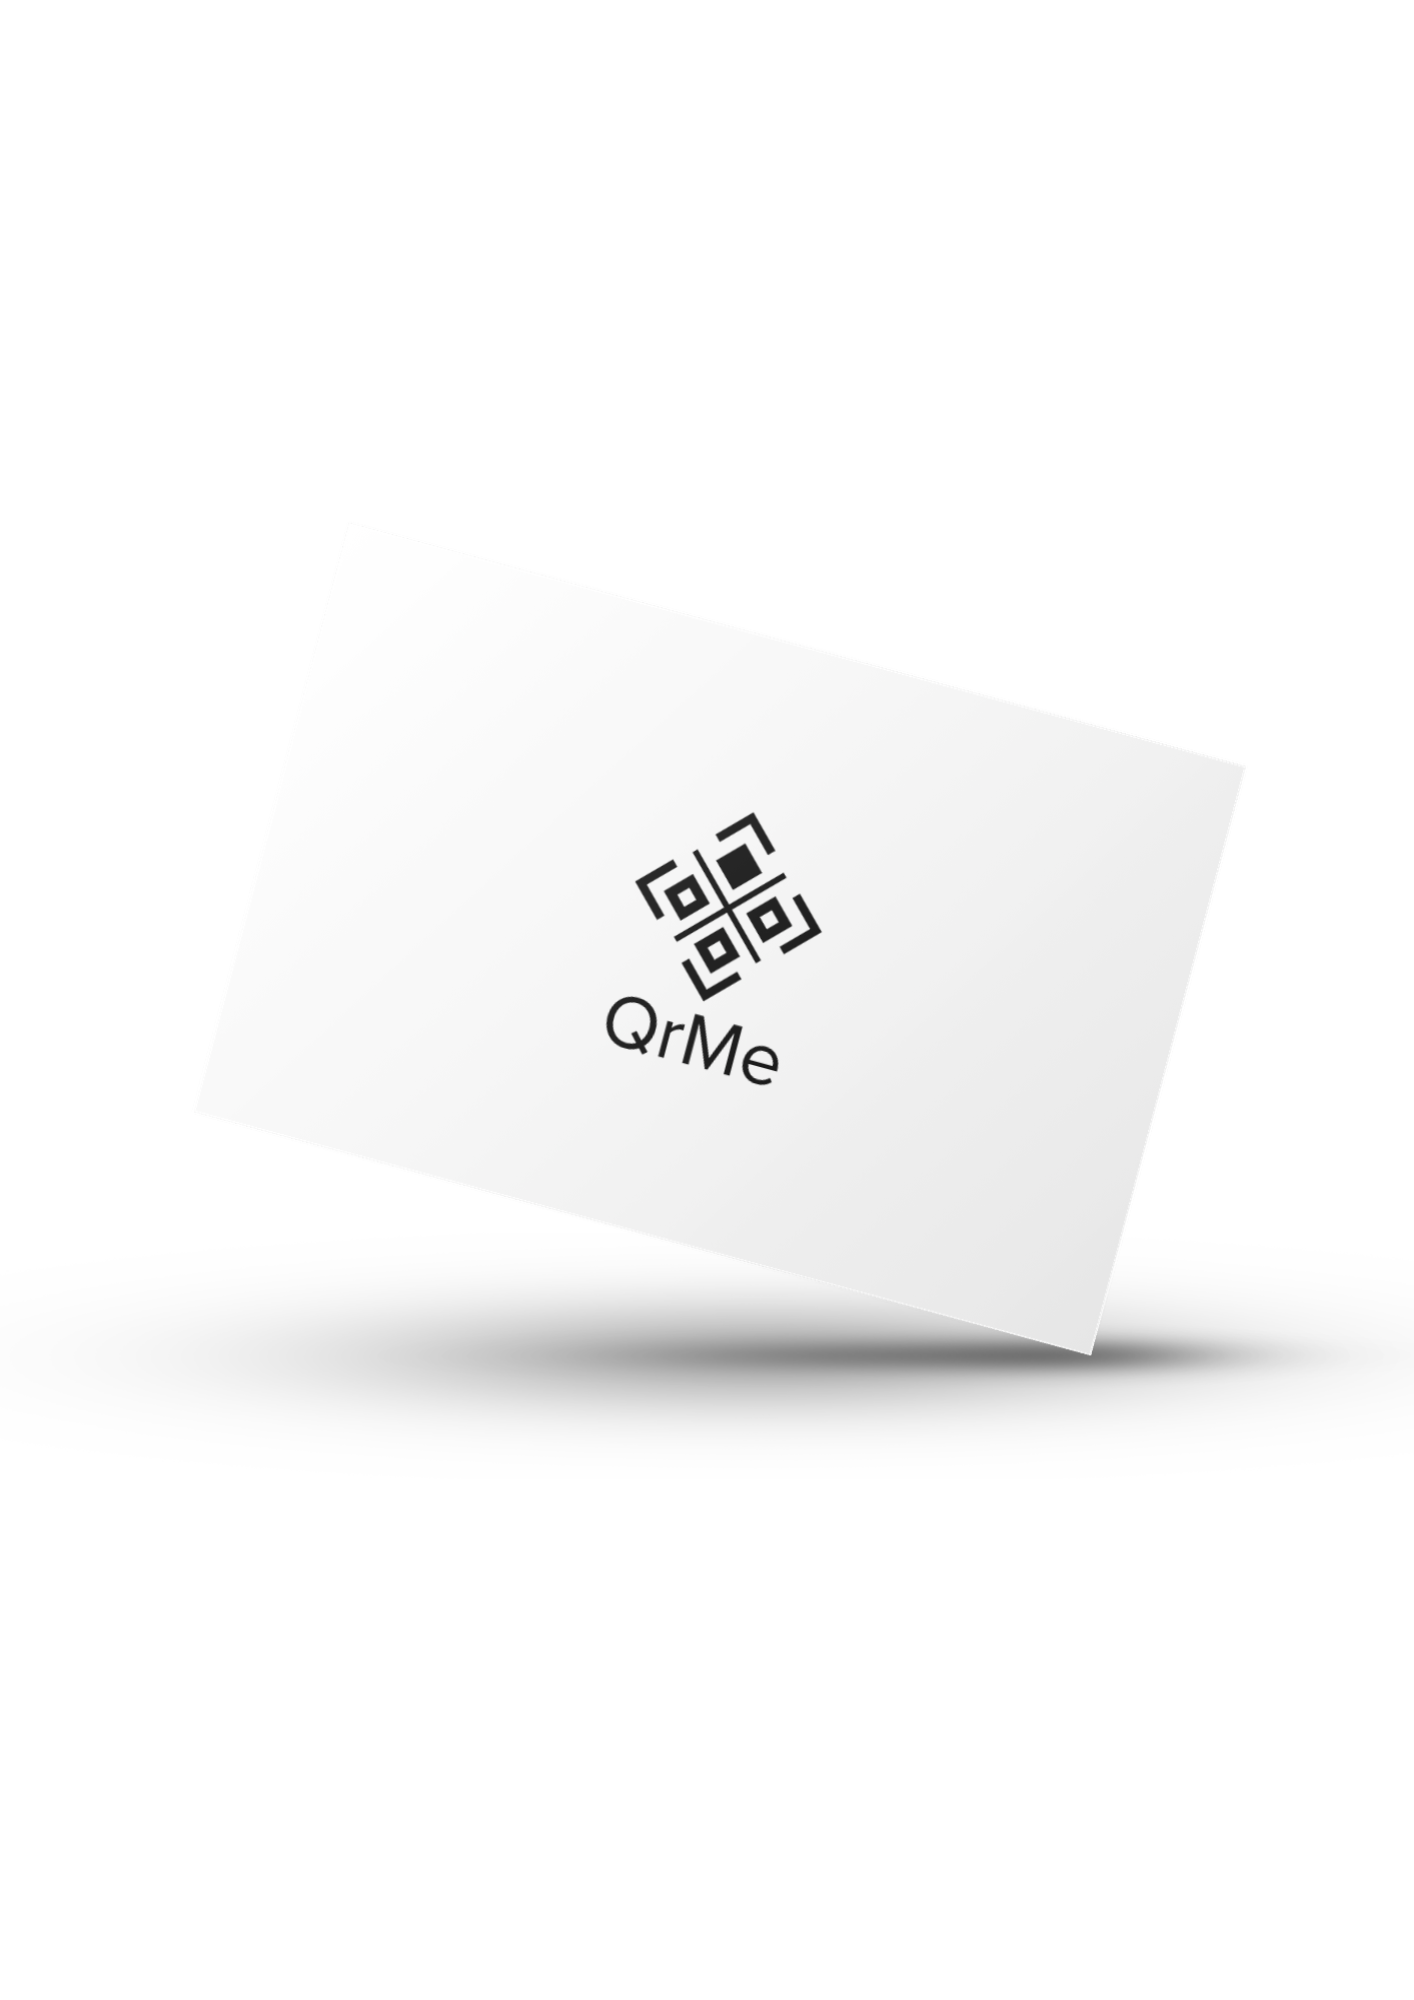 Visitenkarte - QrMe GmbH - Digitales Marketing Hamburg